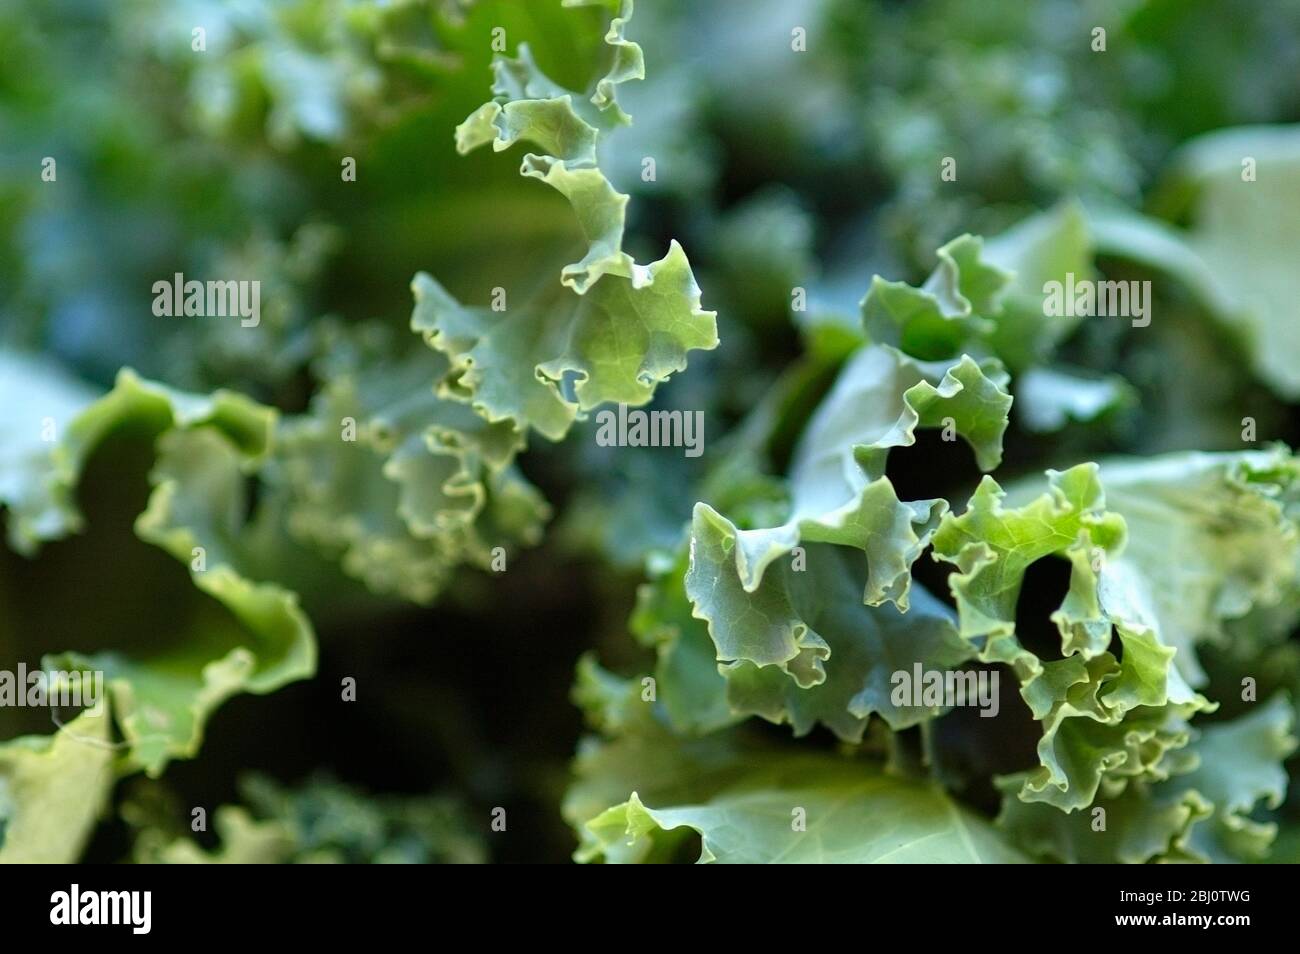 Primer plano de los bordes rizos de las hojas de brócoli recién recogidas - Foto de stock